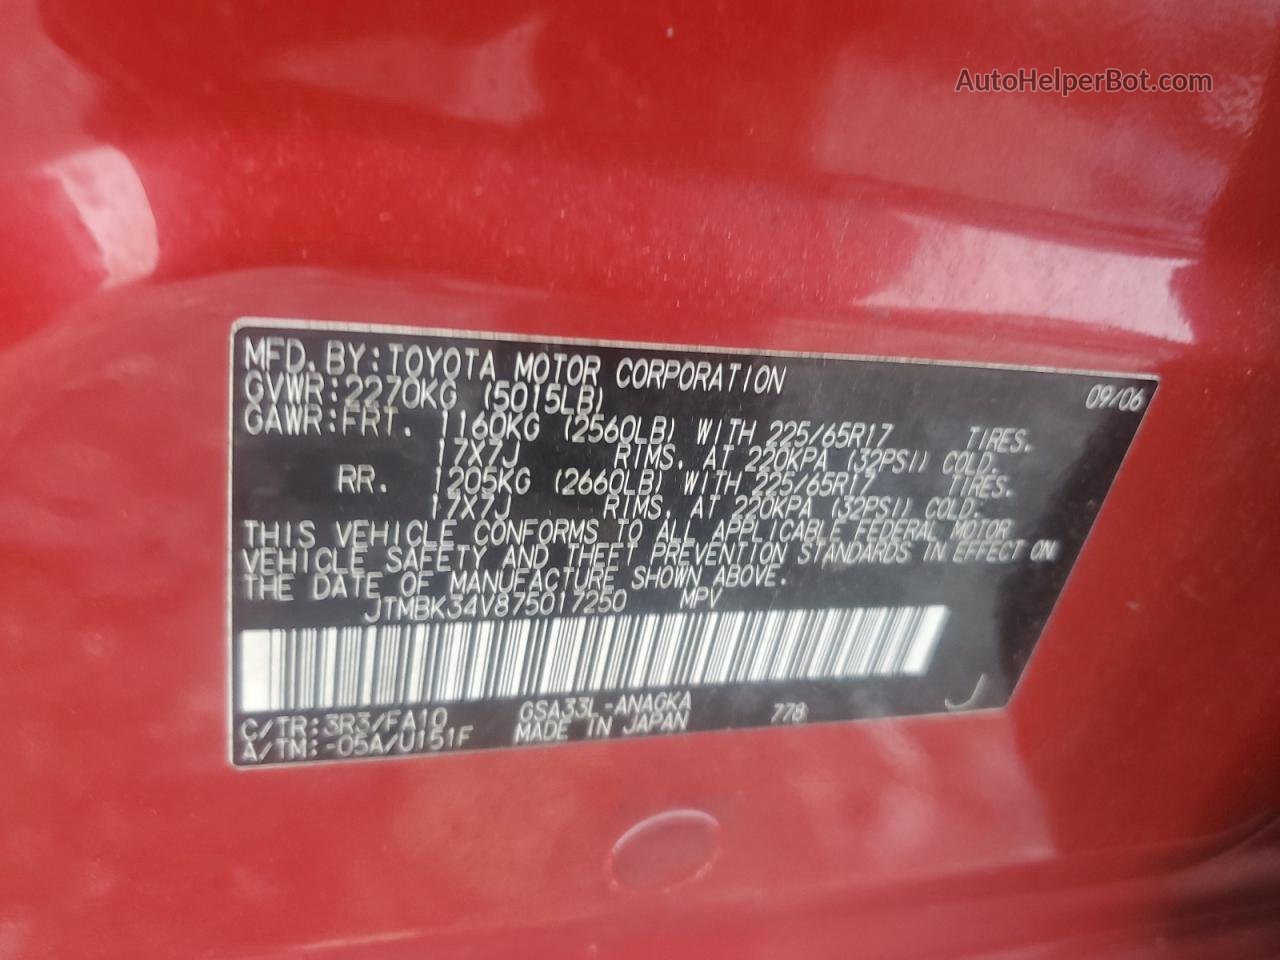 2007 Toyota Rav4 Limited Red vin: JTMBK34V875017250